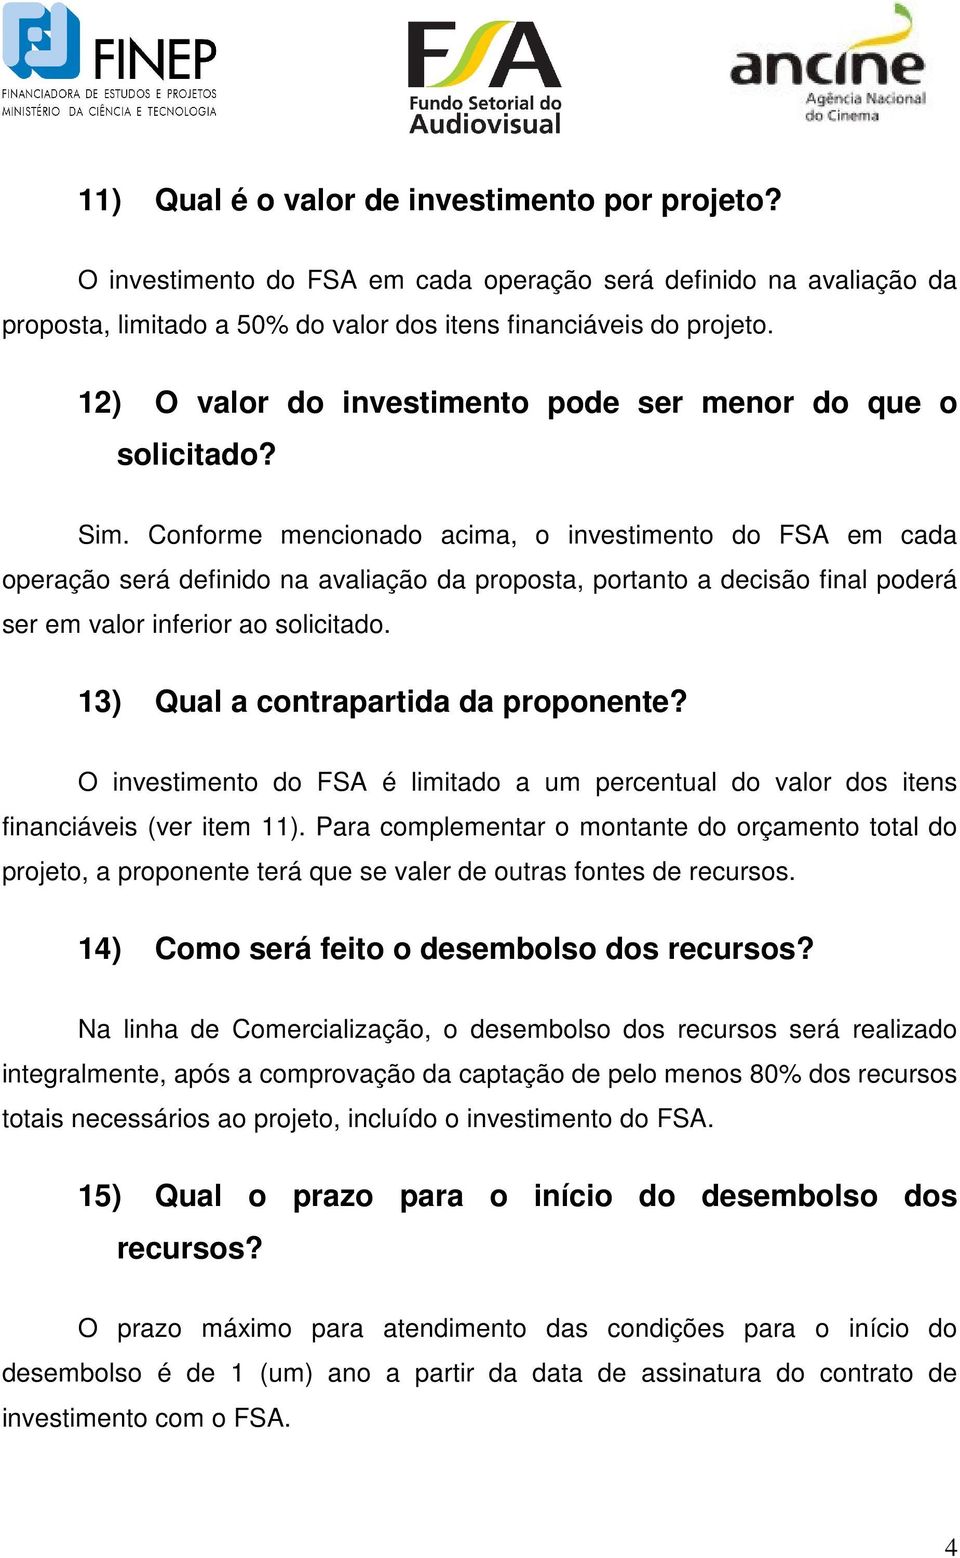 Conforme mencionado acima, o investimento do FSA em cada operação será definido na avaliação da proposta, portanto a decisão final poderá ser em valor inferior ao solicitado.